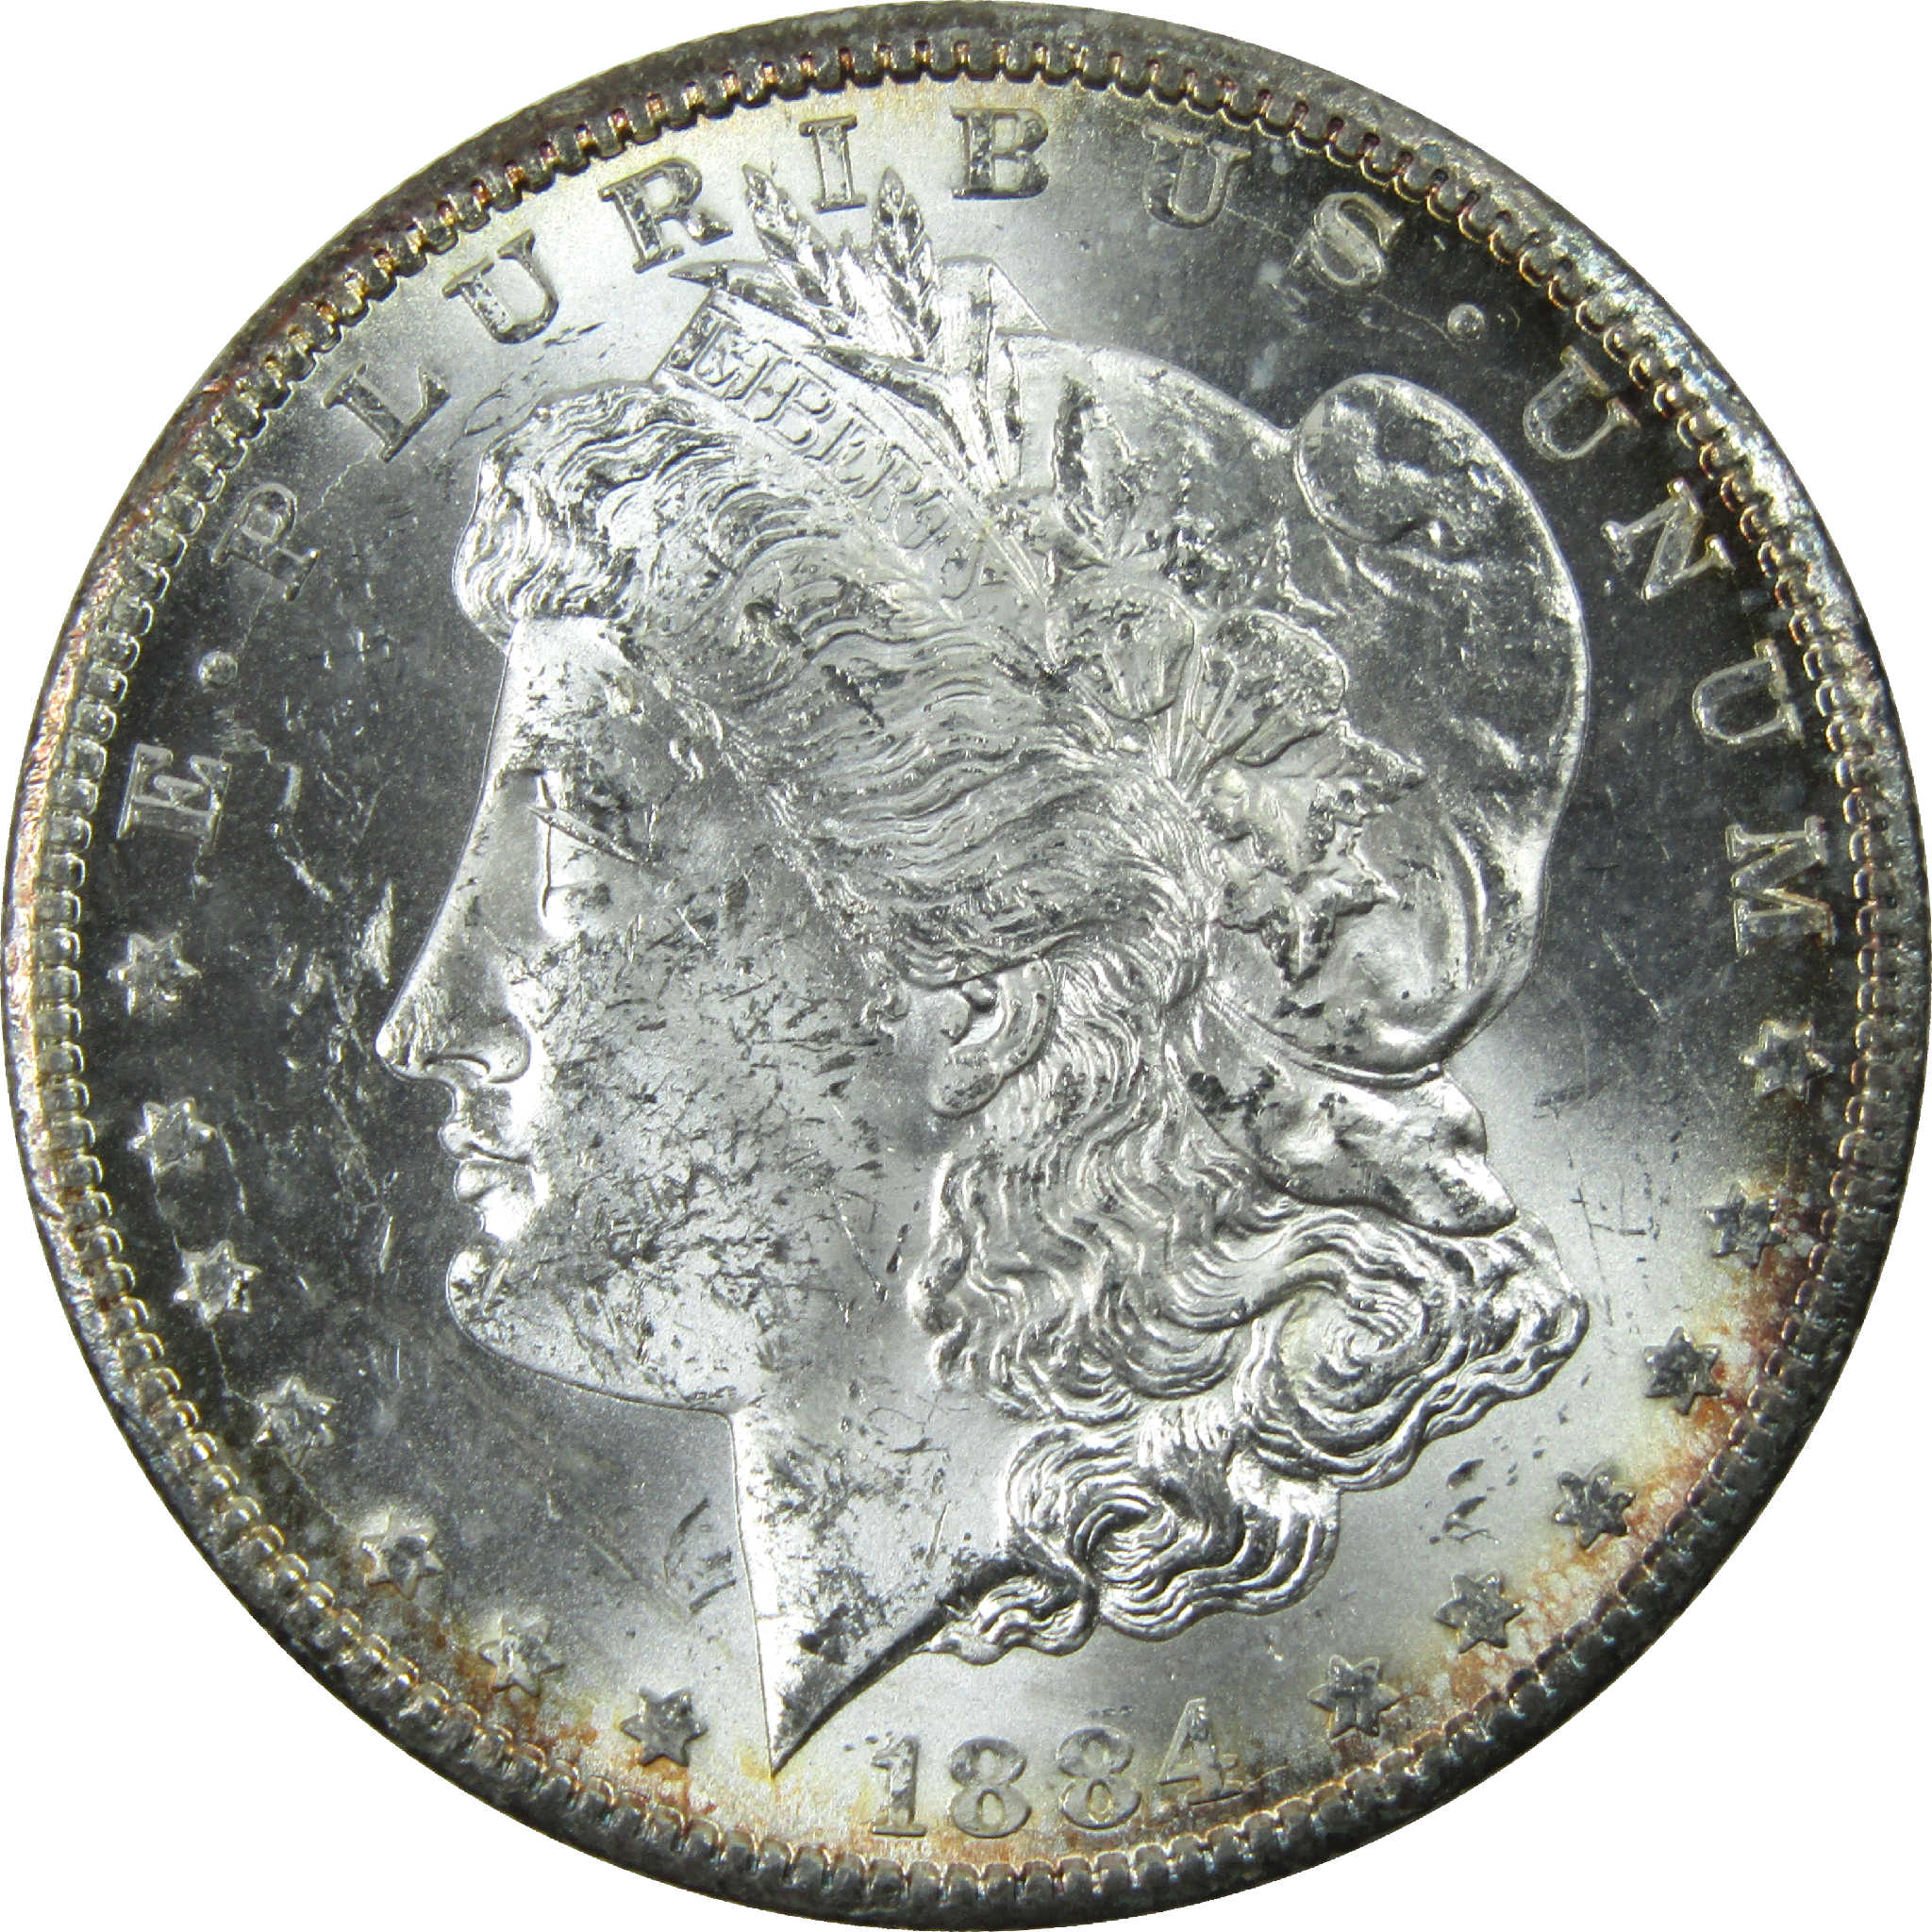 1884 CC Morgan Dollar Uncirculated Silver $1 Coin SKU:I12146 - Morgan coin - Morgan silver dollar - Morgan silver dollar for sale - Profile Coins &amp; Collectibles